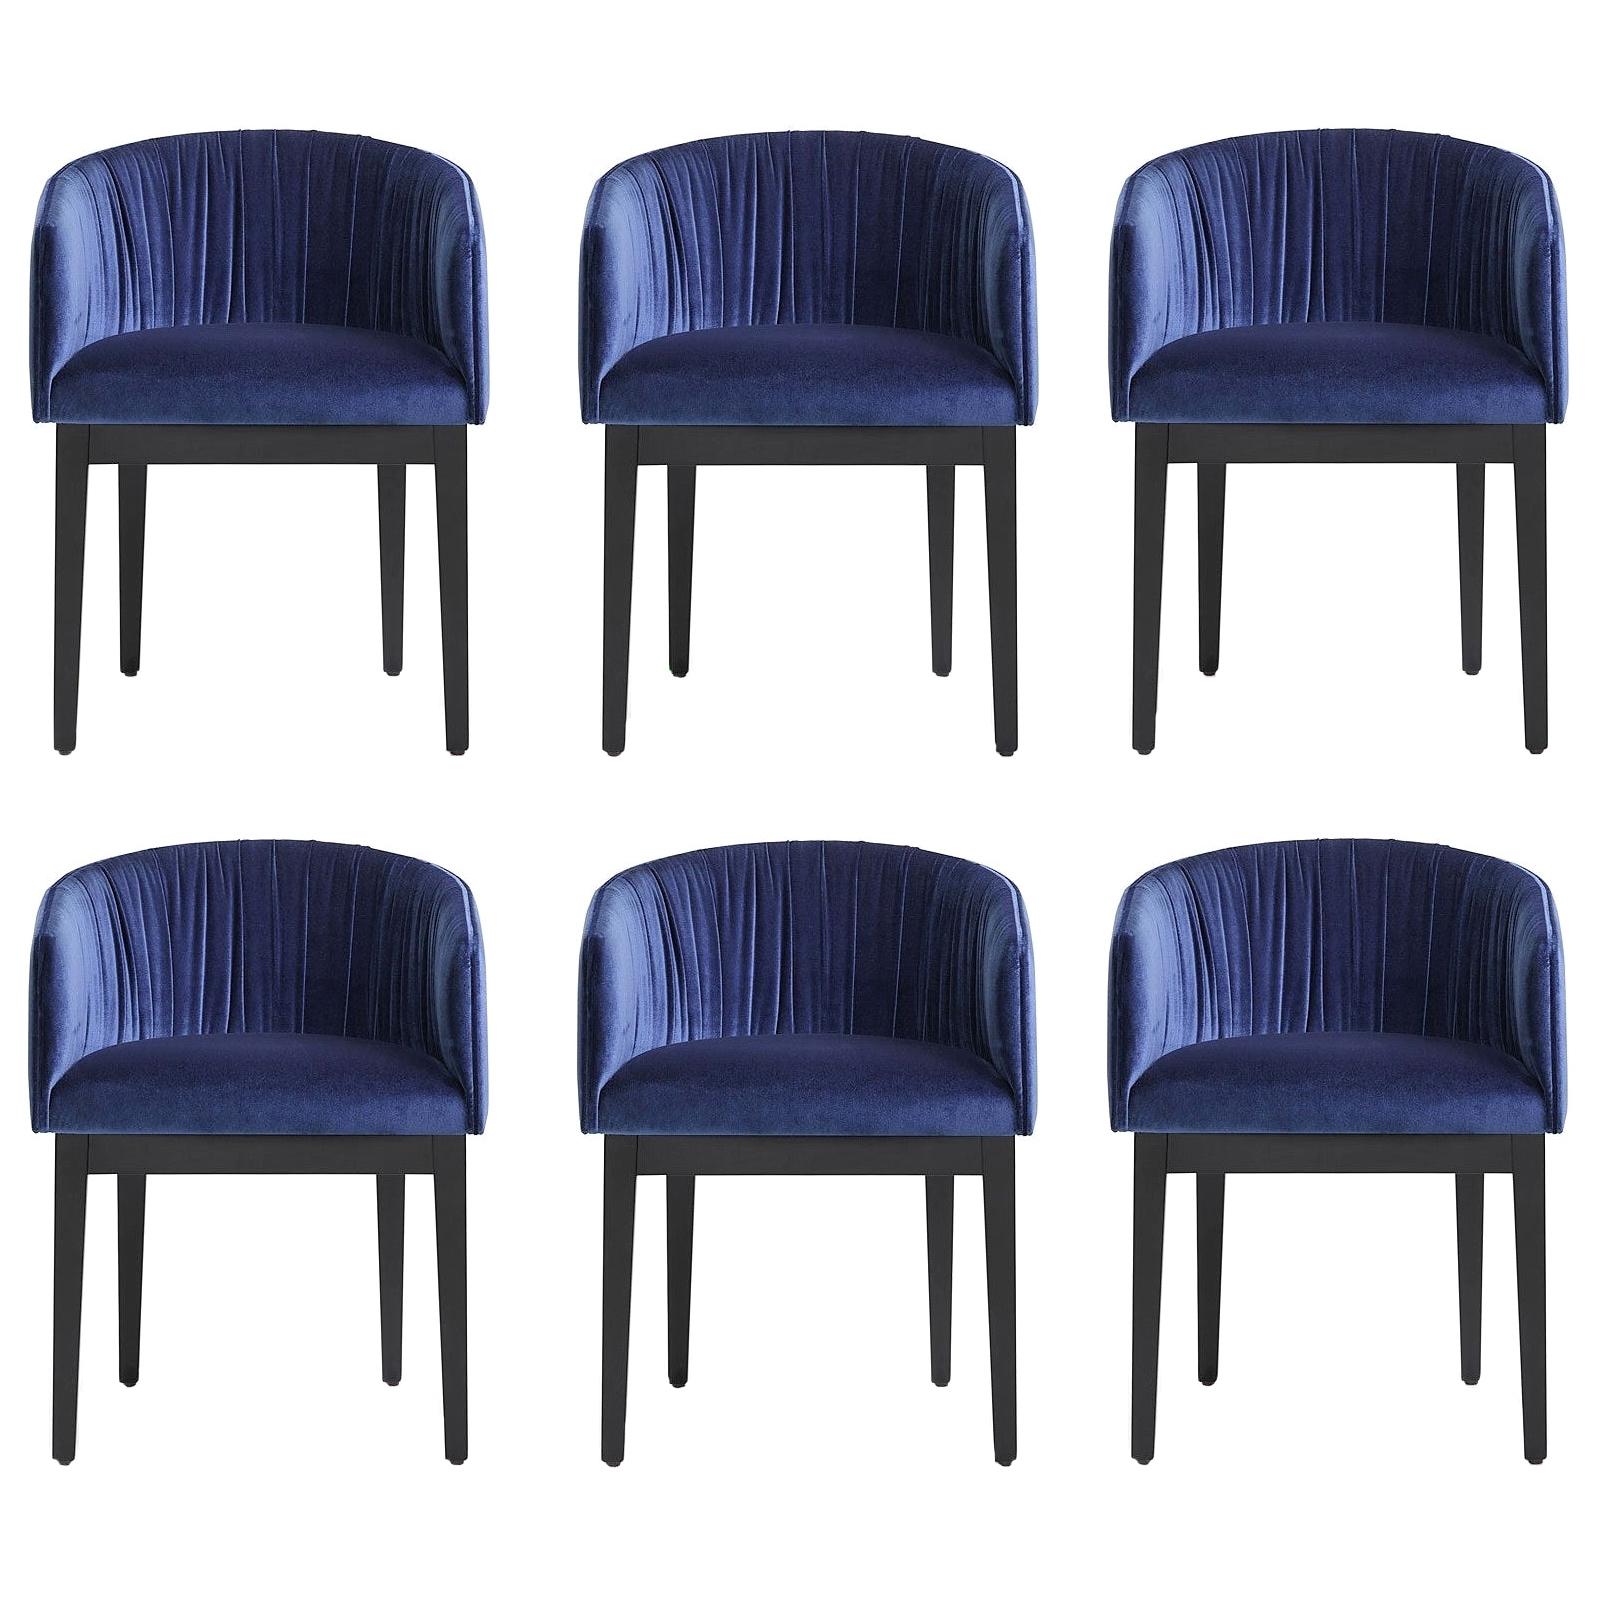 Der marineblaue Samtbezug, die schwarz lackierten Holzbeine und die geschwungene Silhouette sind ein zeitlos elegantes Design, das sich problemlos in jeden Einrichtungsstil einfügt. 
Dieser Stuhl ist robust konstruiert und für den Einsatz im